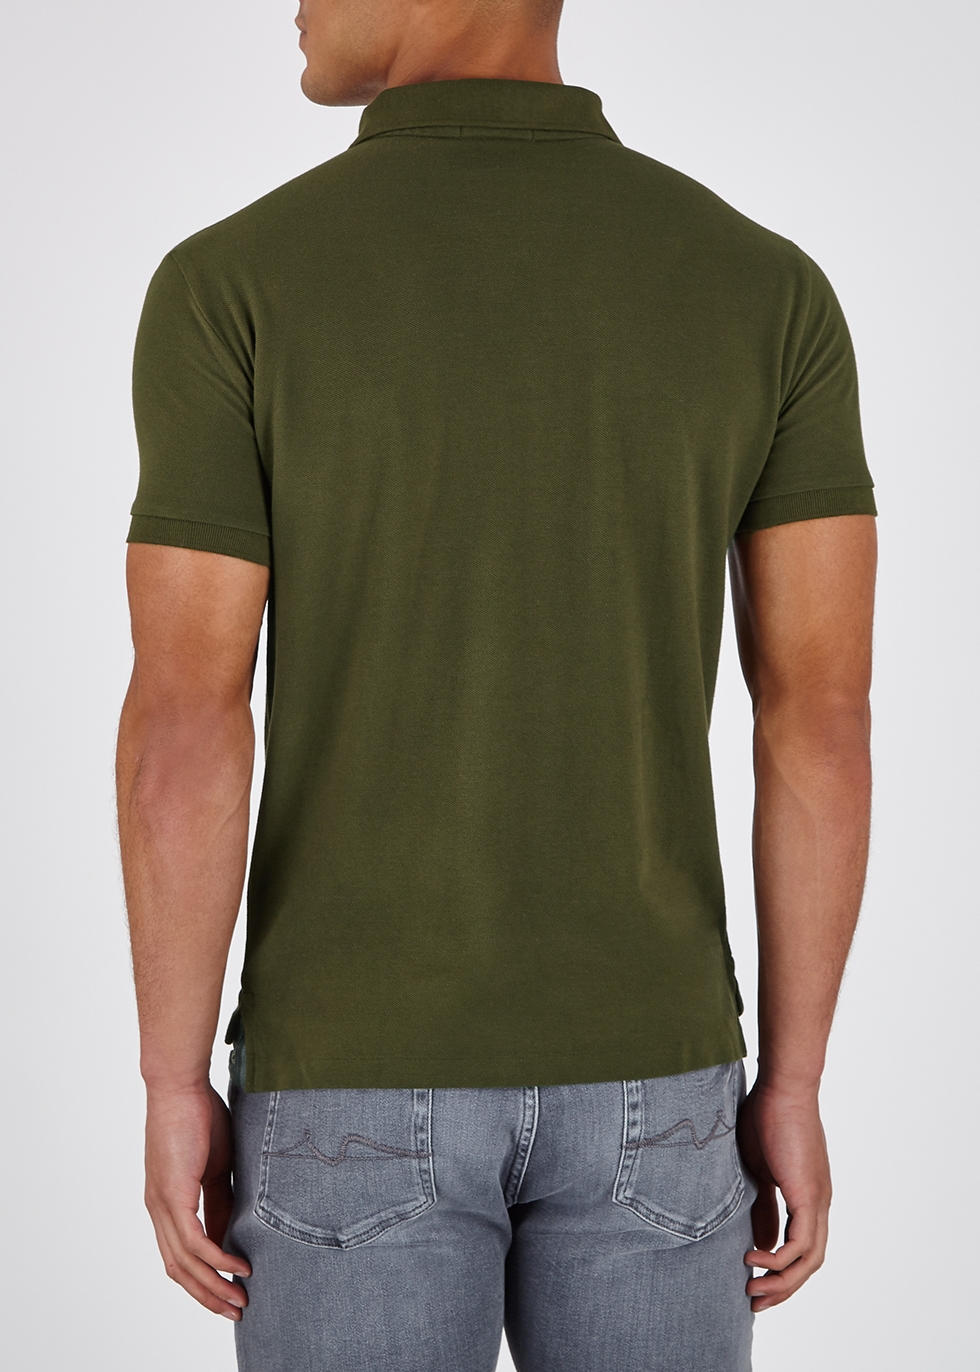 khaki green ralph lauren shirt